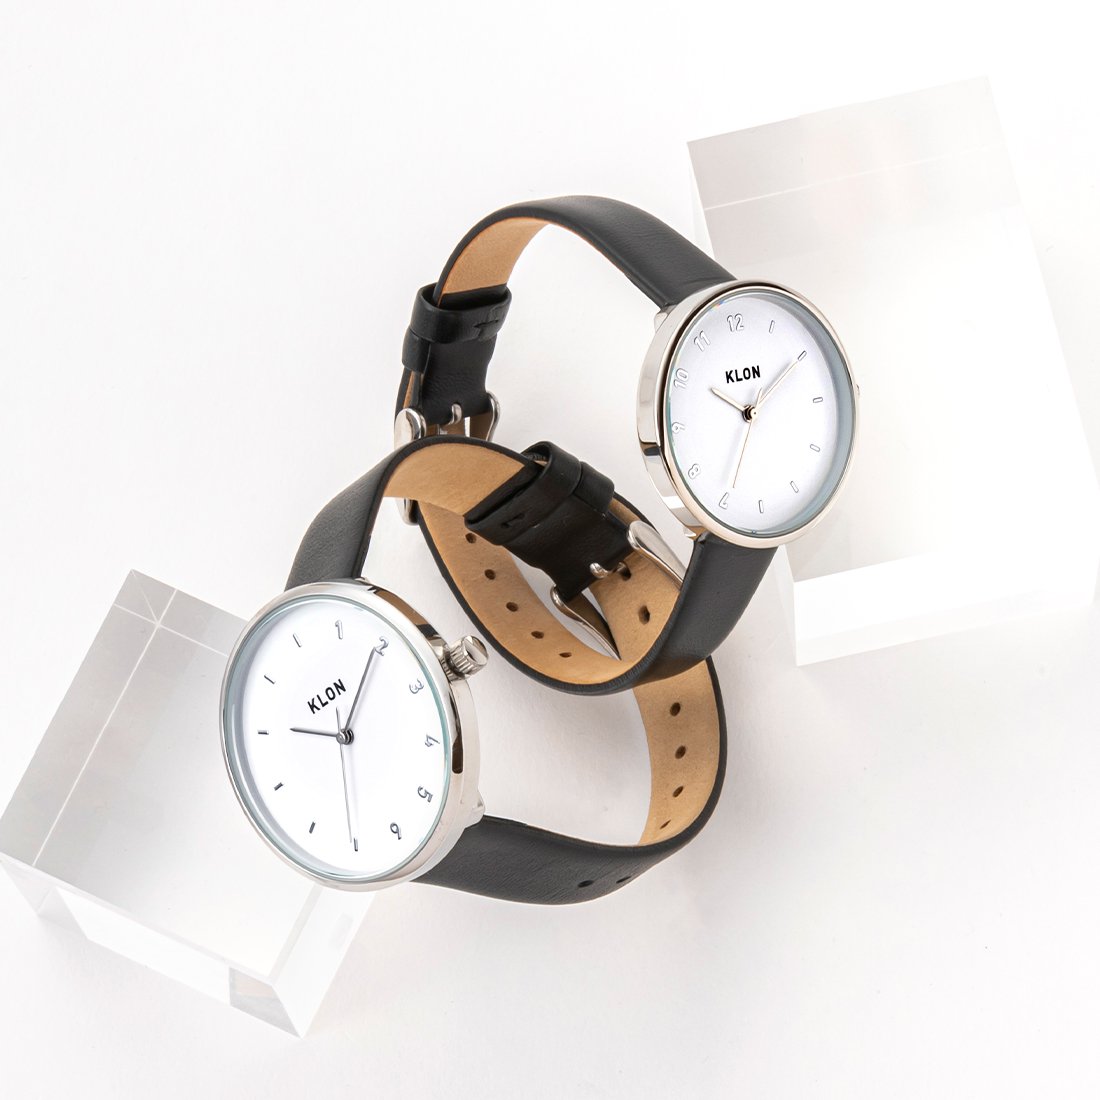 【組合せ商品】KLON CONNECTION ELFIN(FIRST:33mm×LATTER:38mm) カジュアル 腕時計